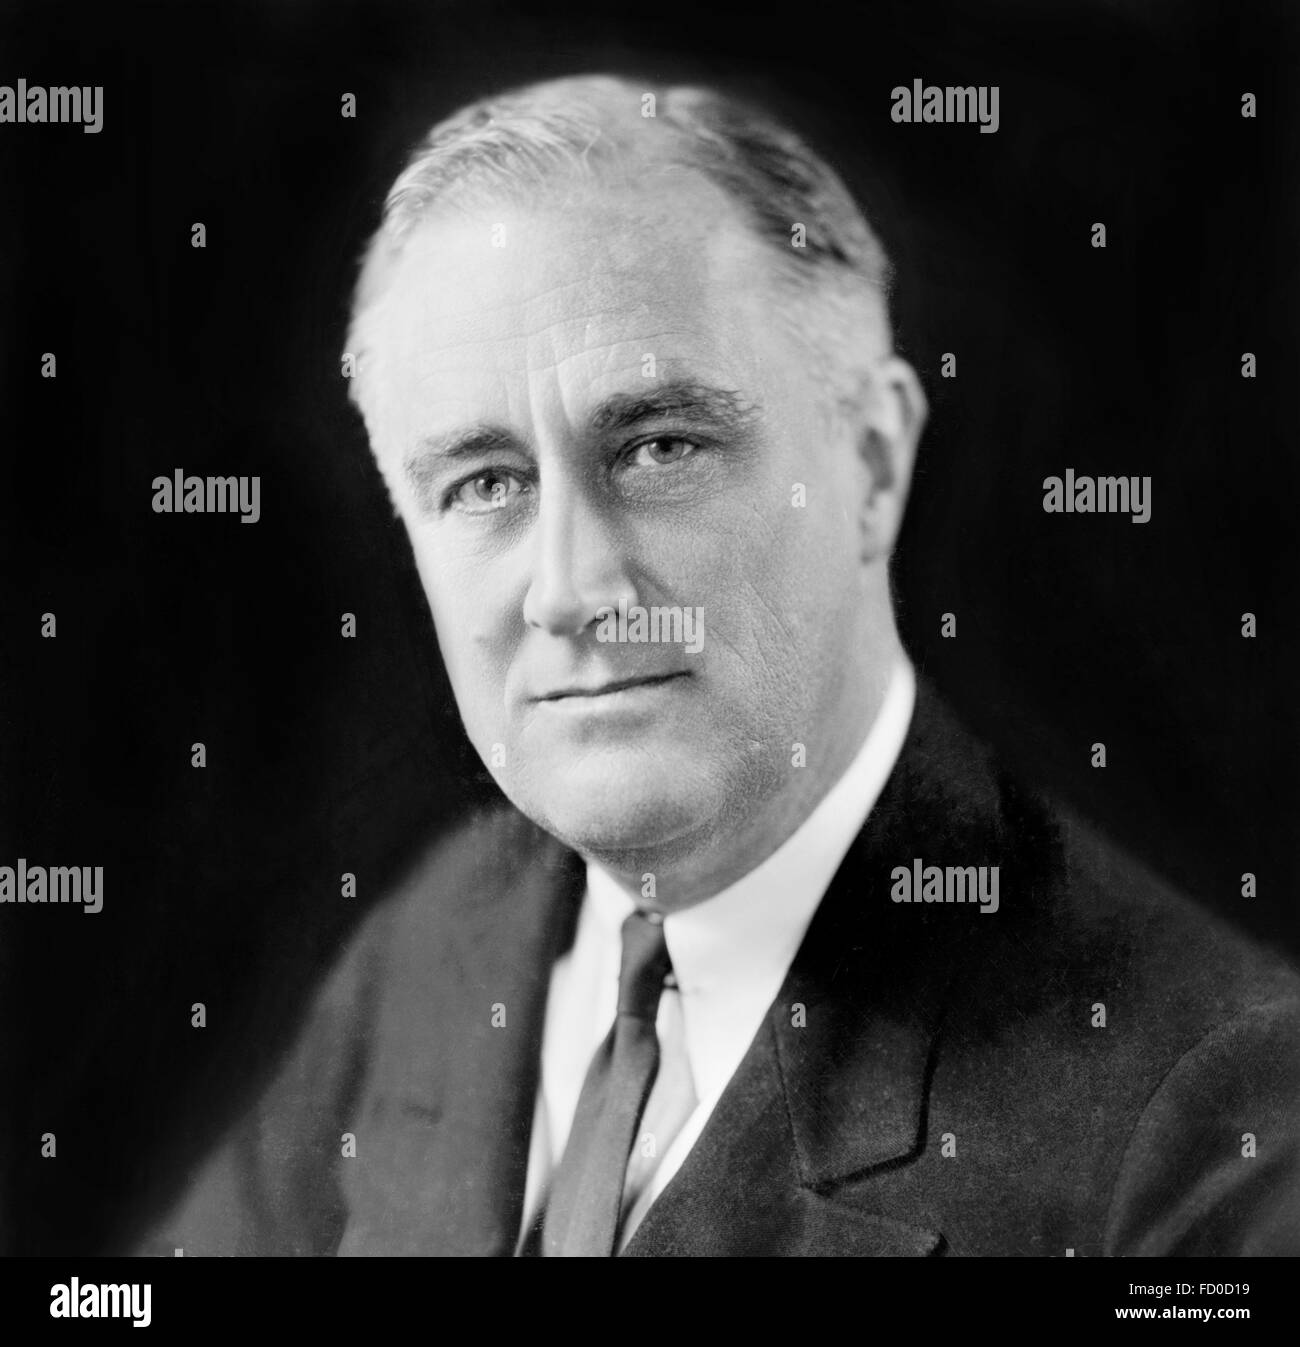 Franklin D Roosevelt, Porträt von der 32. Präsident der USA, c. Dec 1933 Stockfoto